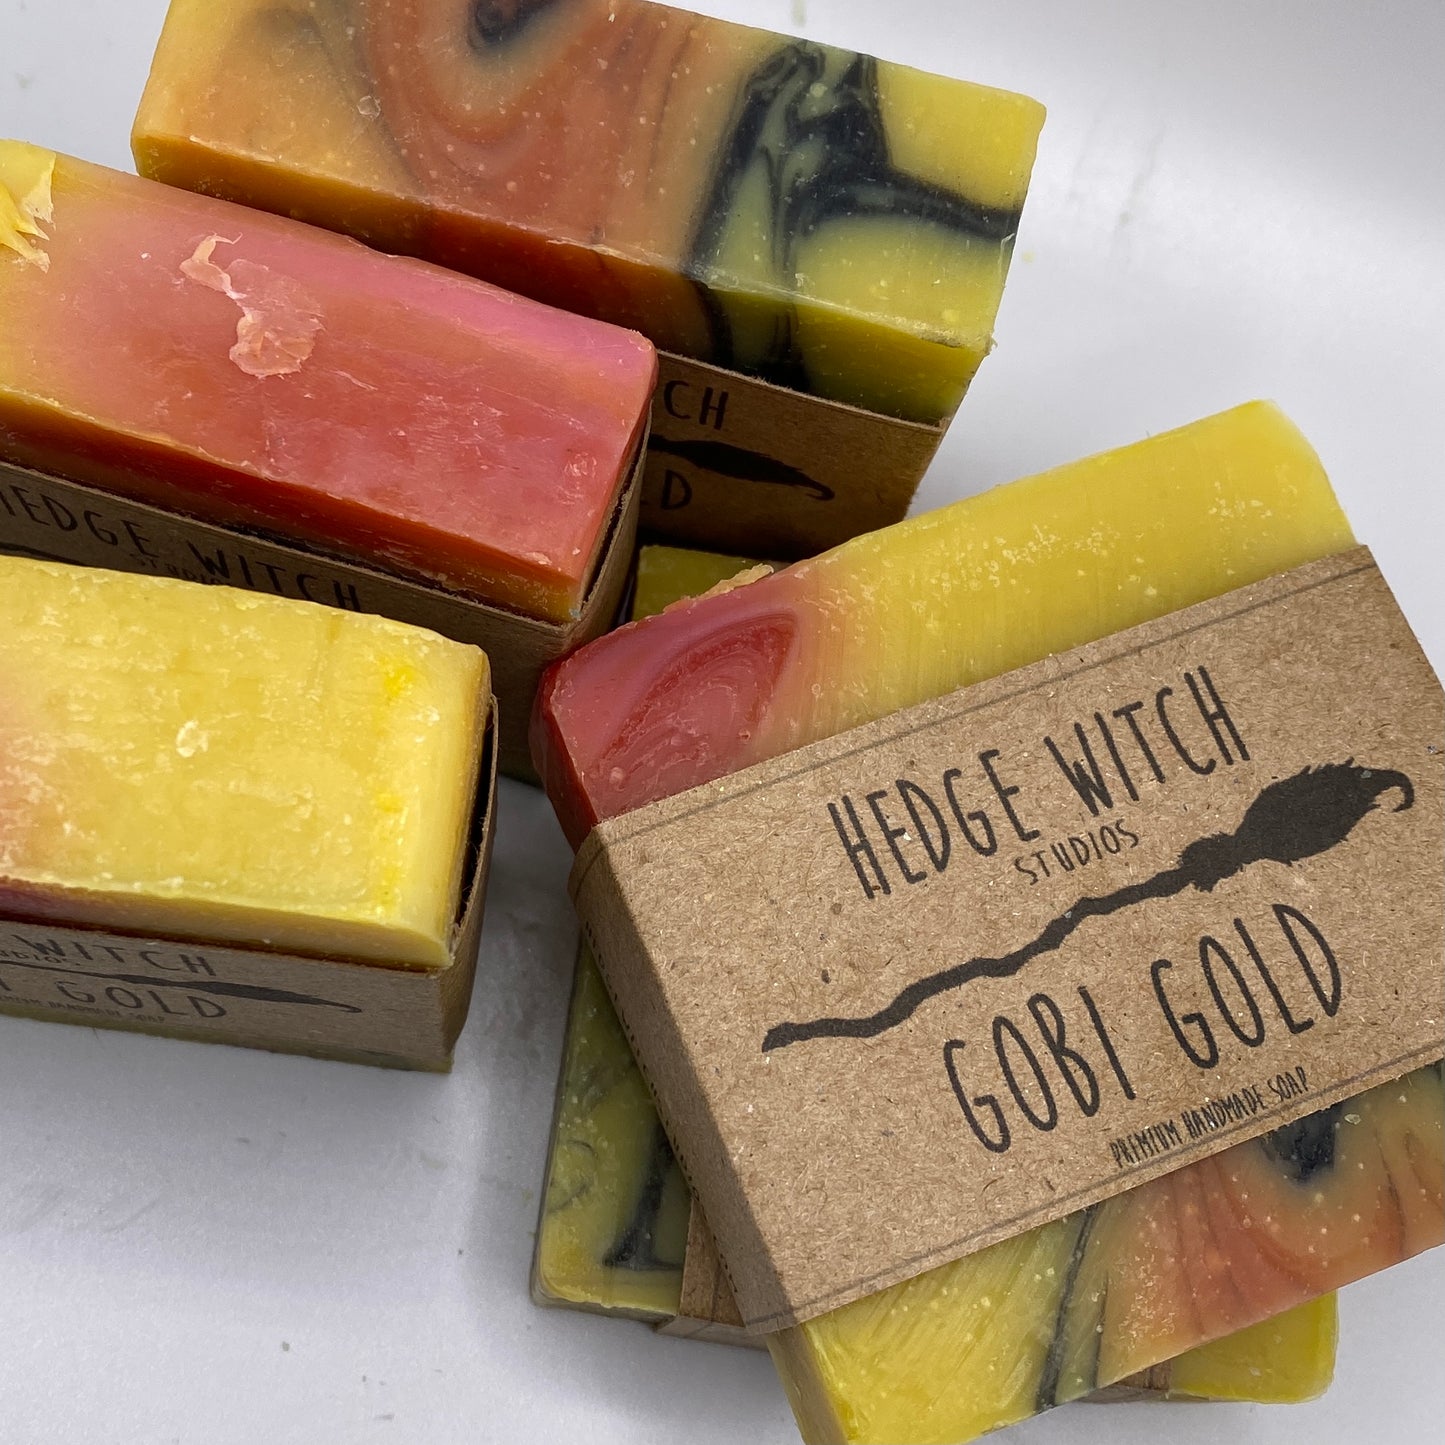 Gobi Gold Soap